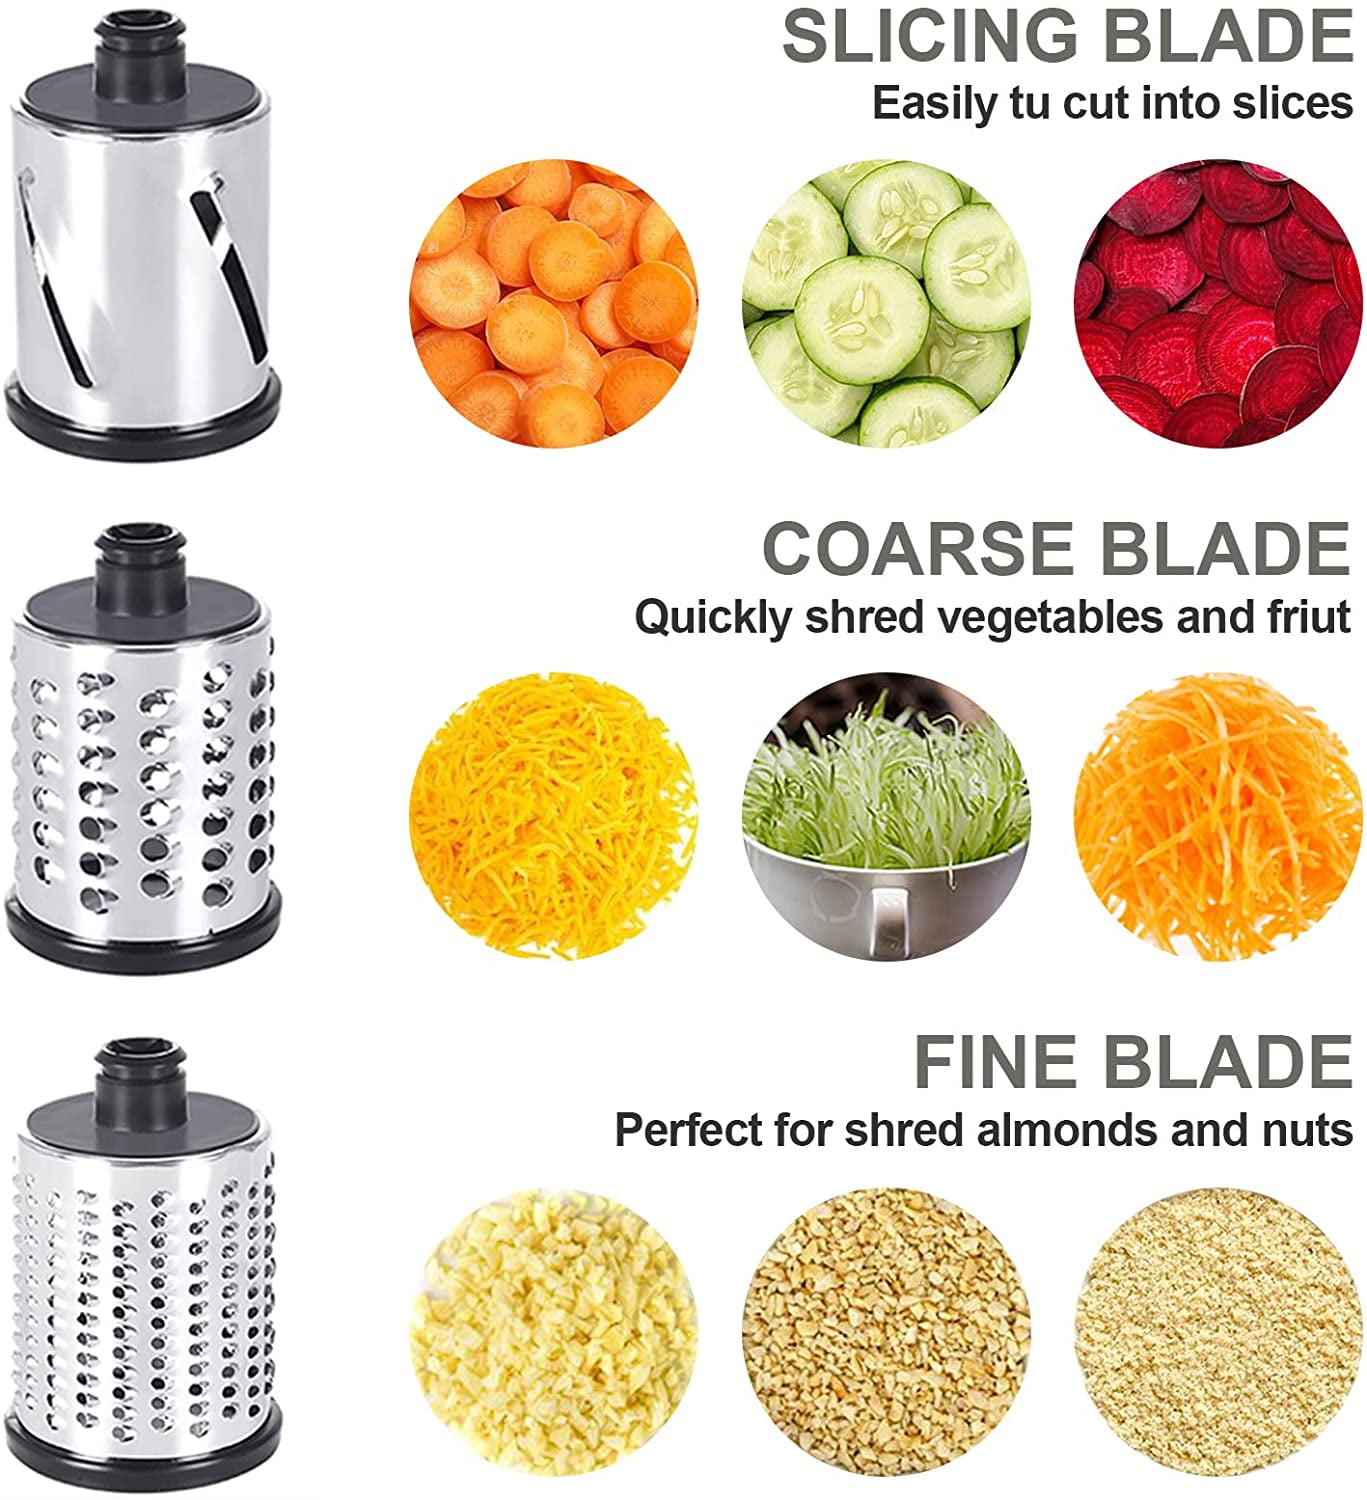  Slicer Shredder Attachments for KitchenAid Stand Mixer Cheese  Grater Attachment for KitchenAid, Slicer Accessories with 3 Blades by  InnoMoon: Home & Kitchen